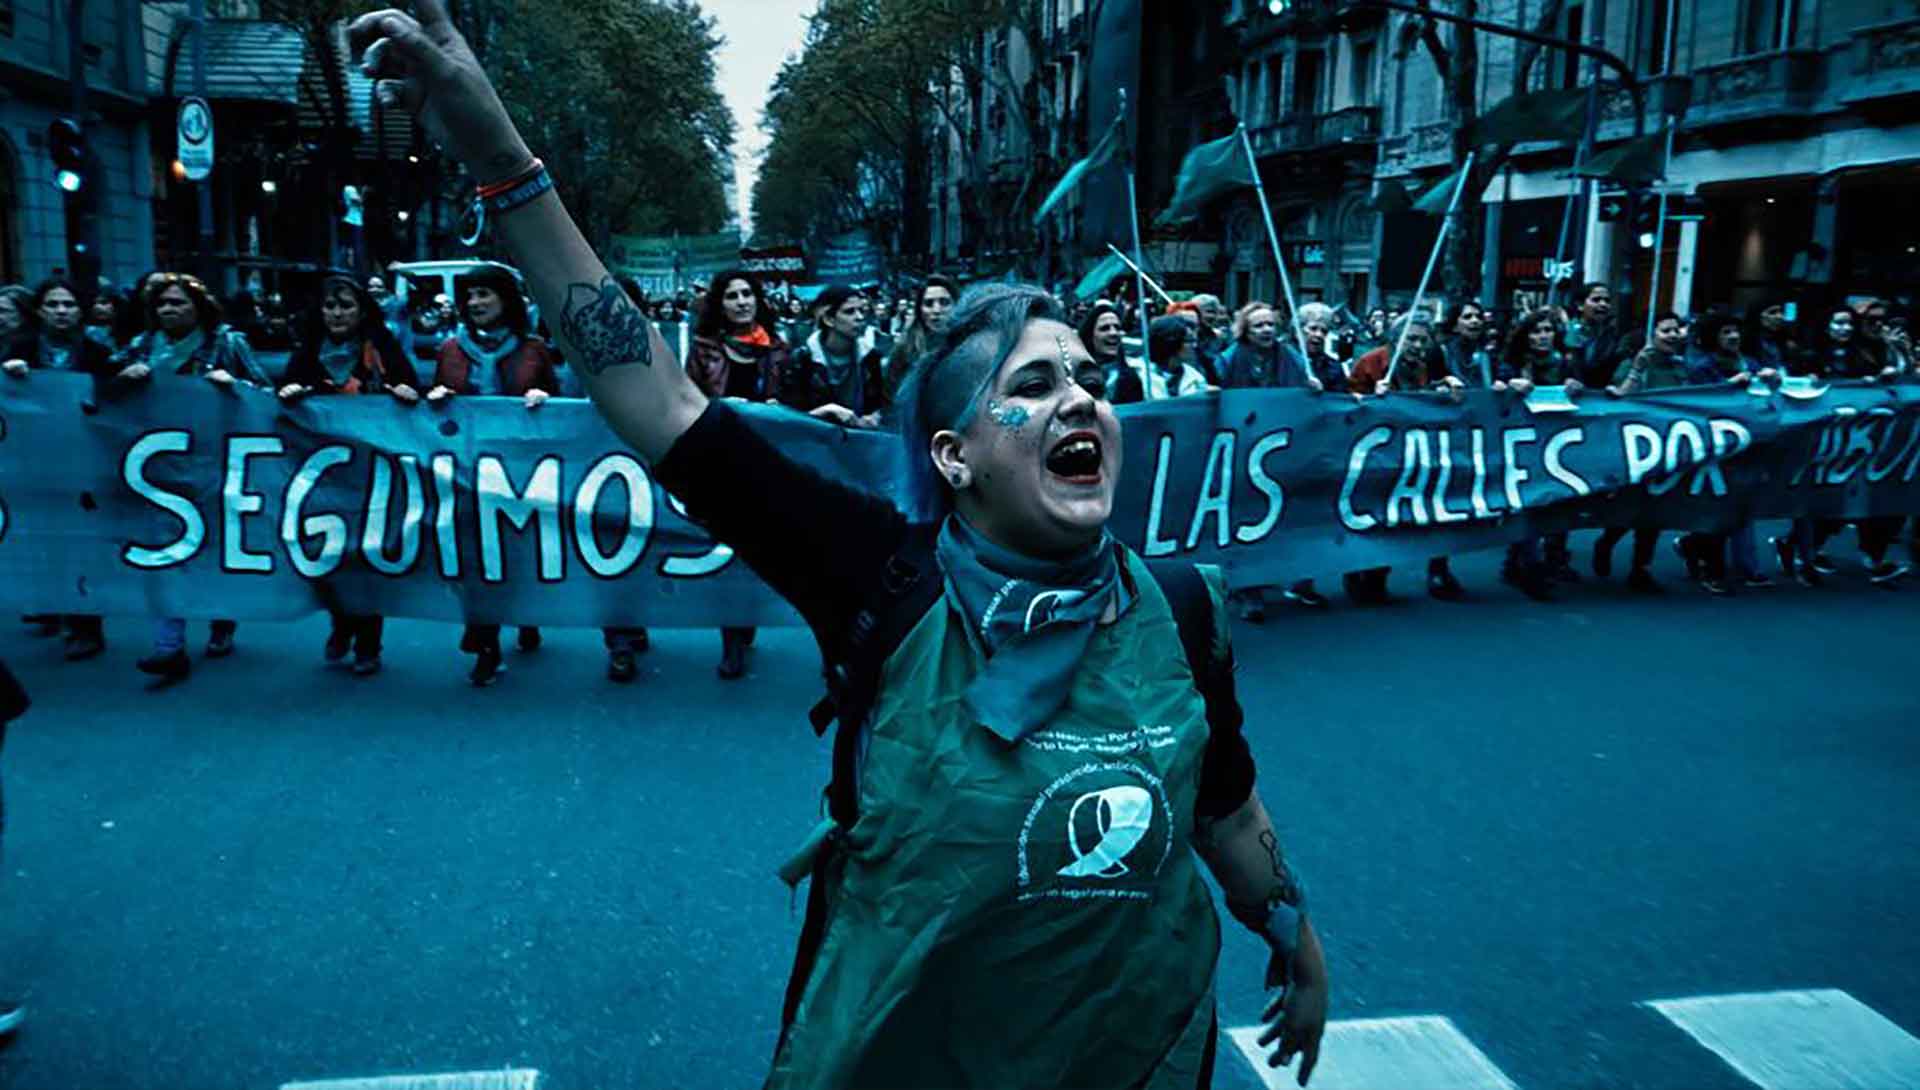 Manifestation de femme en Argentine